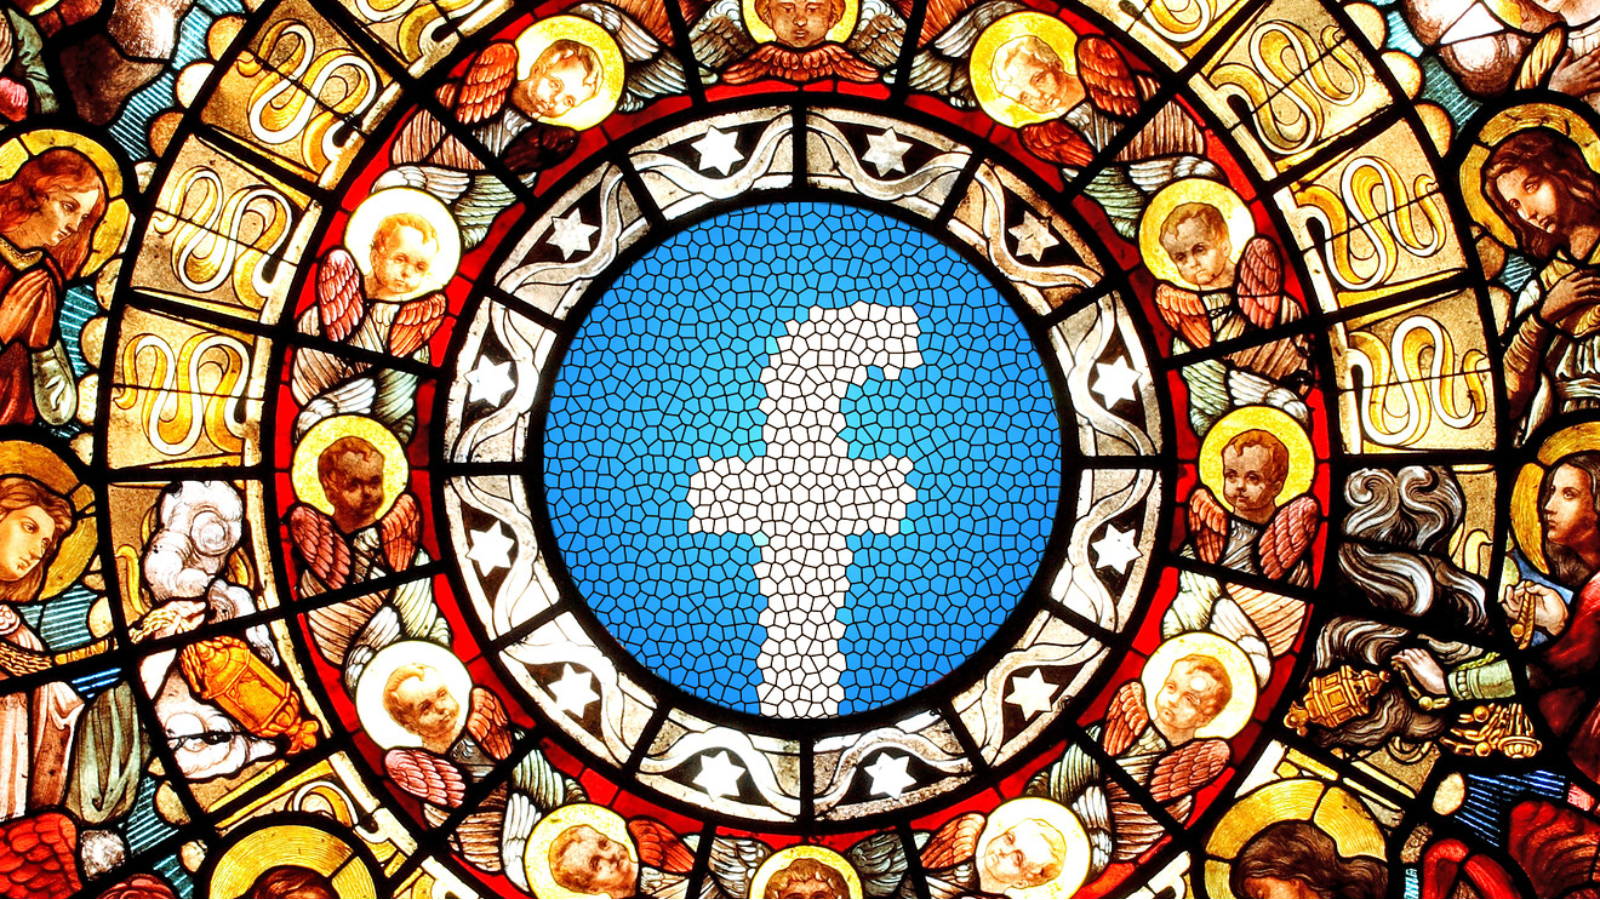 Facebook removerá campos de opiniões políticas e de religião dos perfis